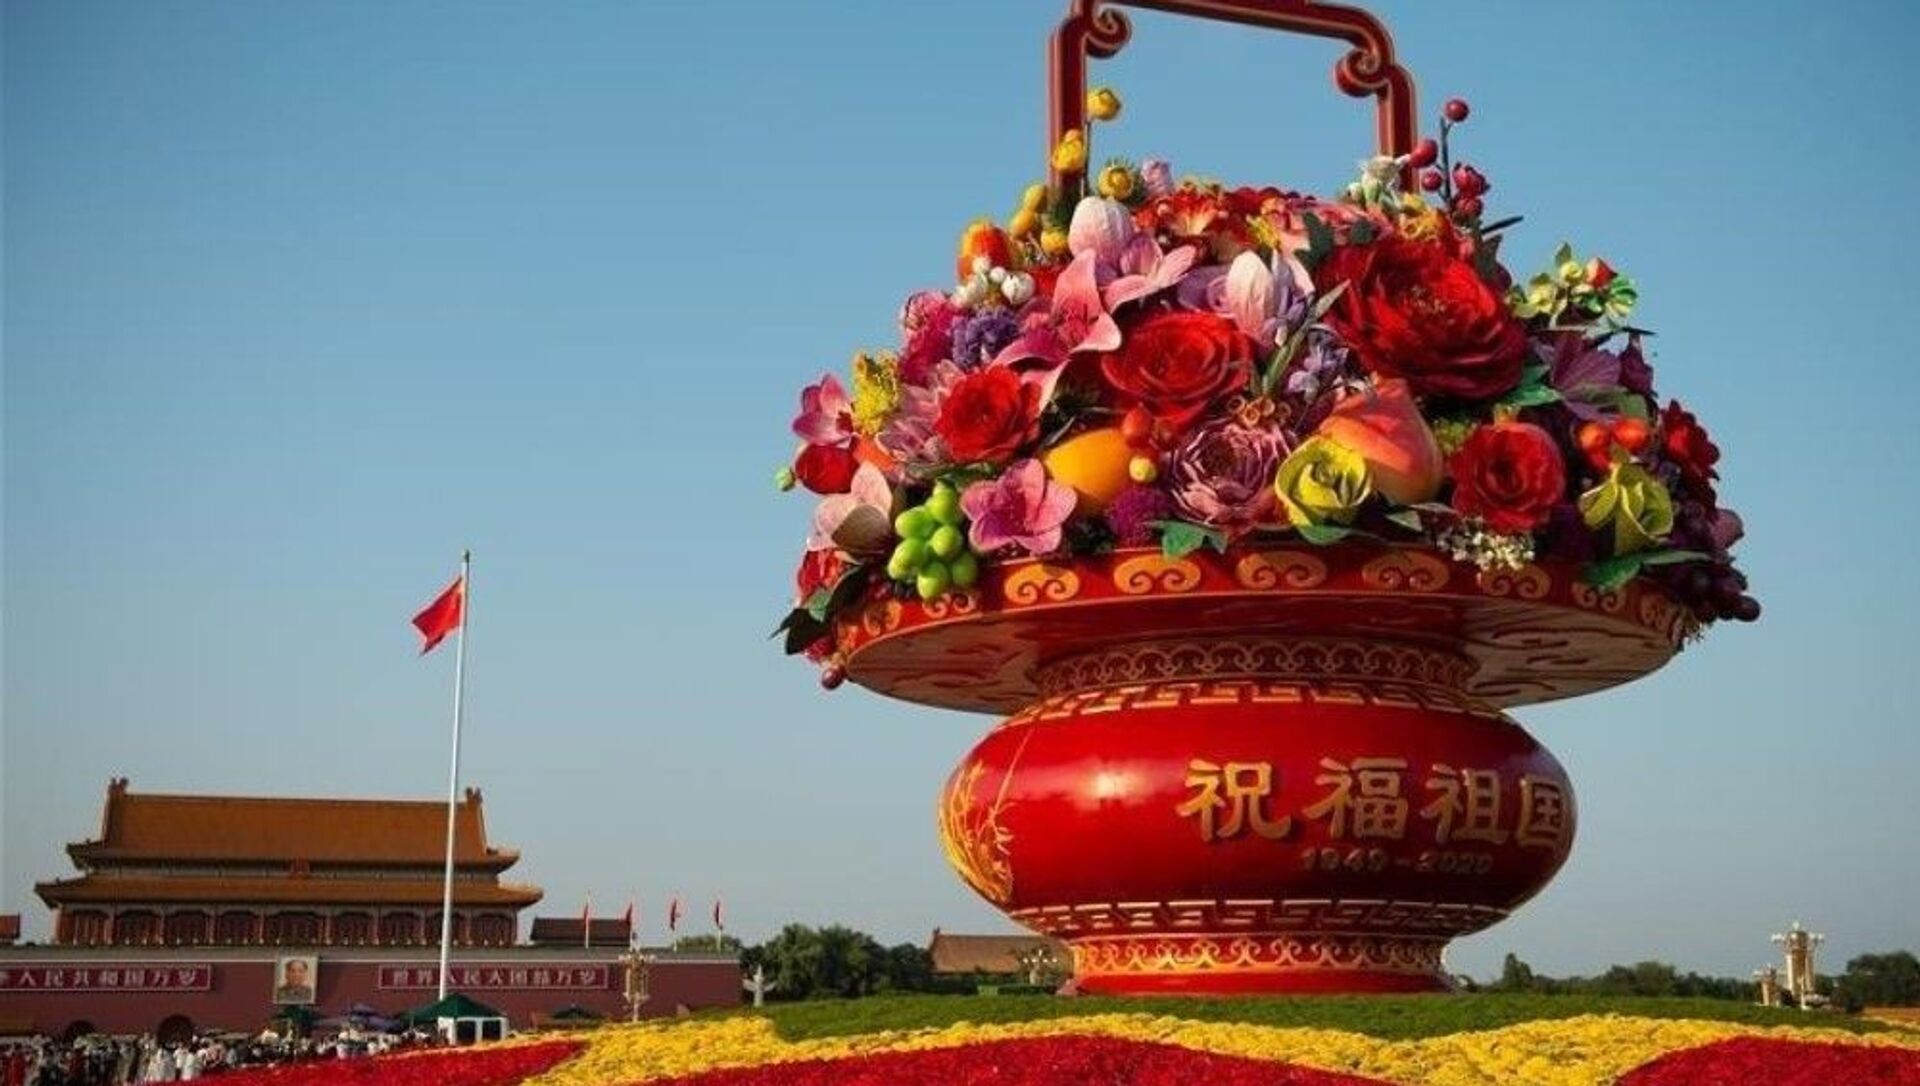 День образования КНР В Китае. Площадь небесного спокойствия Тяньаньмэнь цветы. Площадь Тяньаньмэнь 1 октября. День образования КНР В Китае праздник.